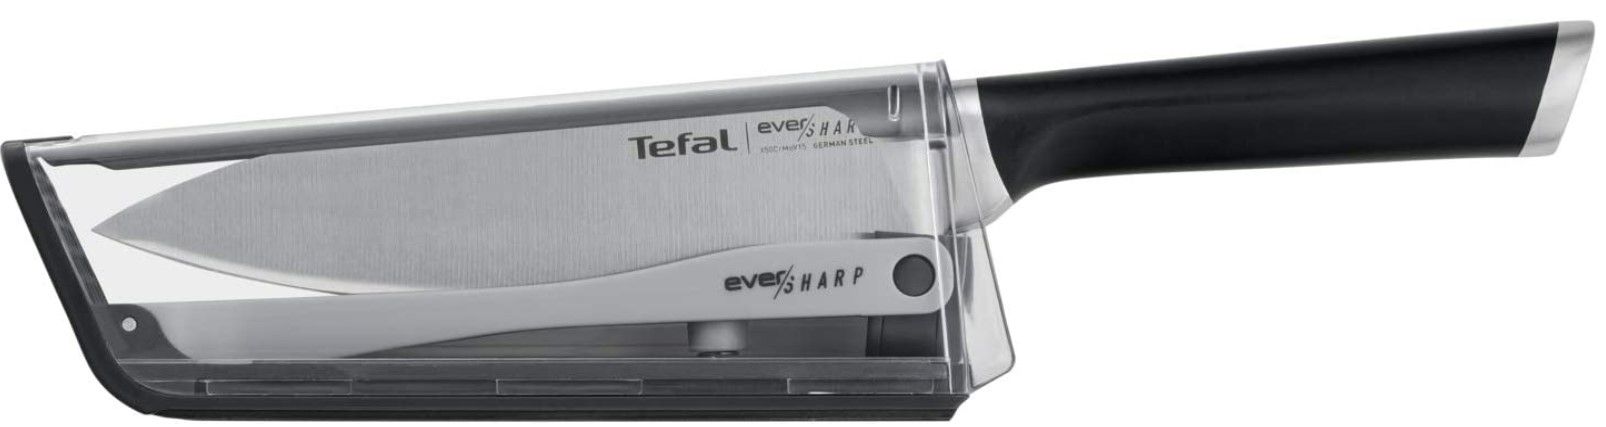 Tefal Ever Sharp K25690 Küchenmesser mit Schleifer für 24,99€ (statt 31€)